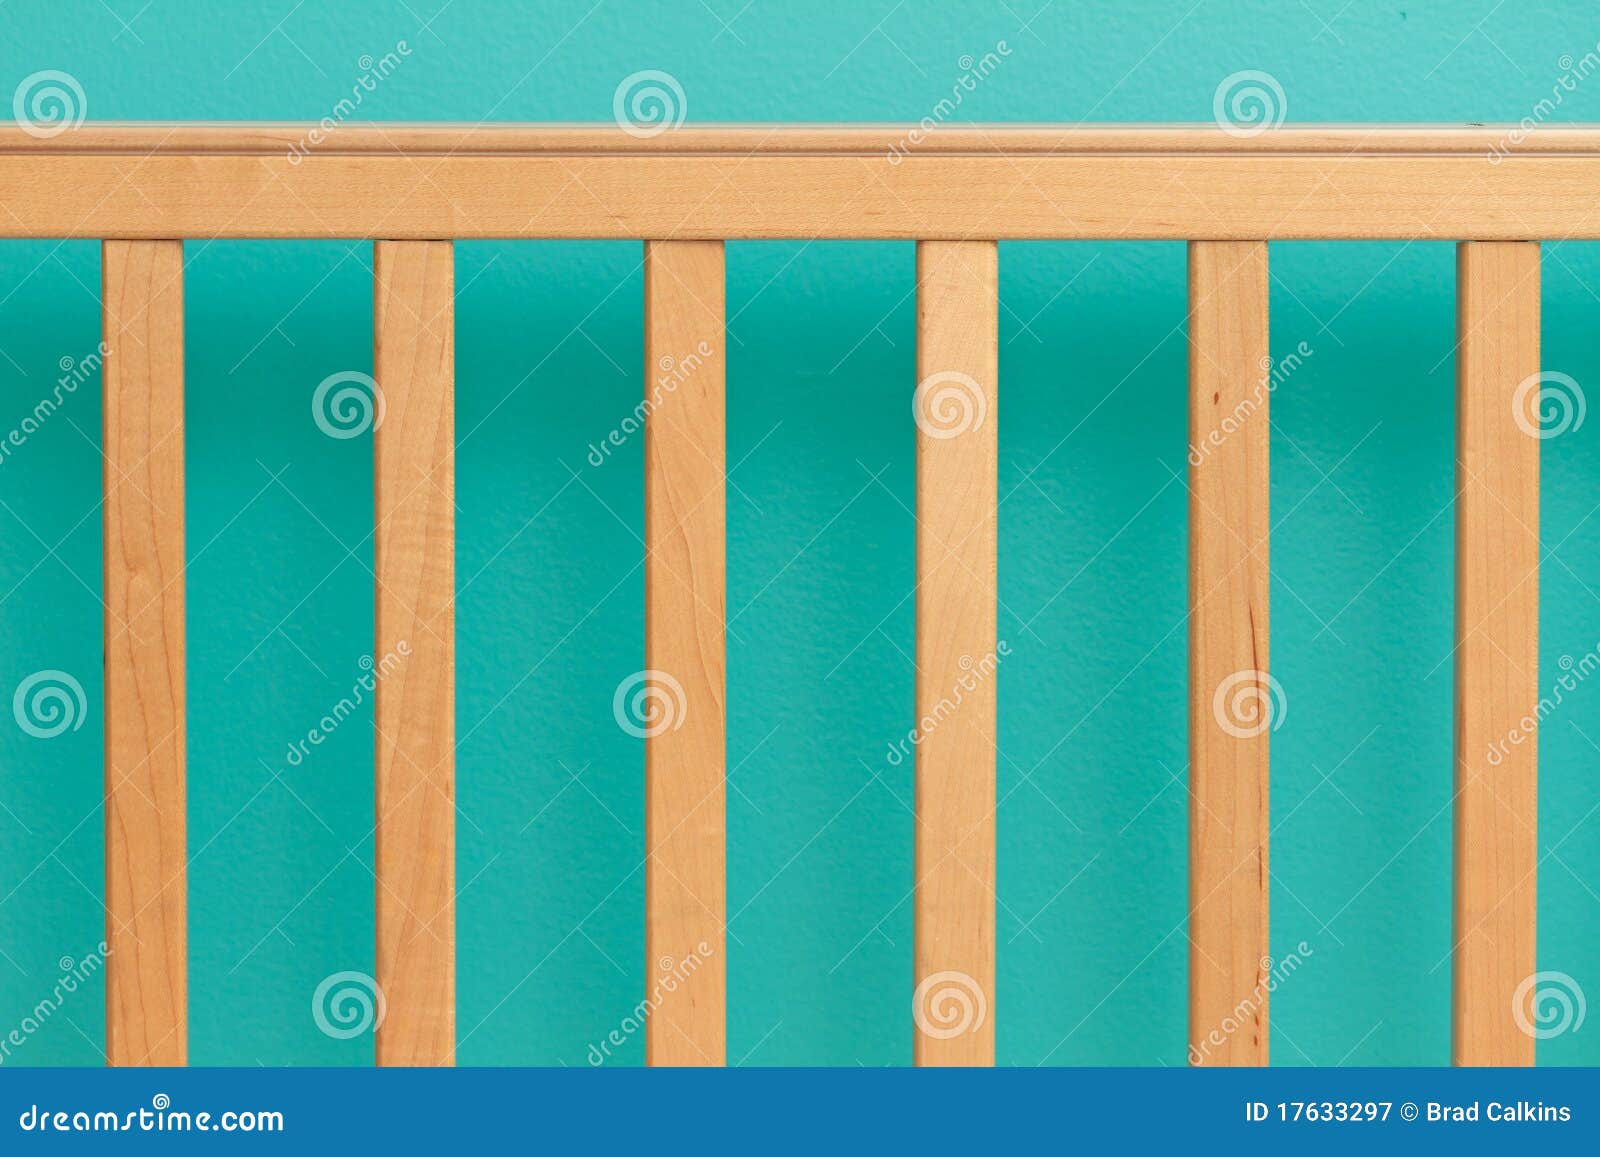 crib railing